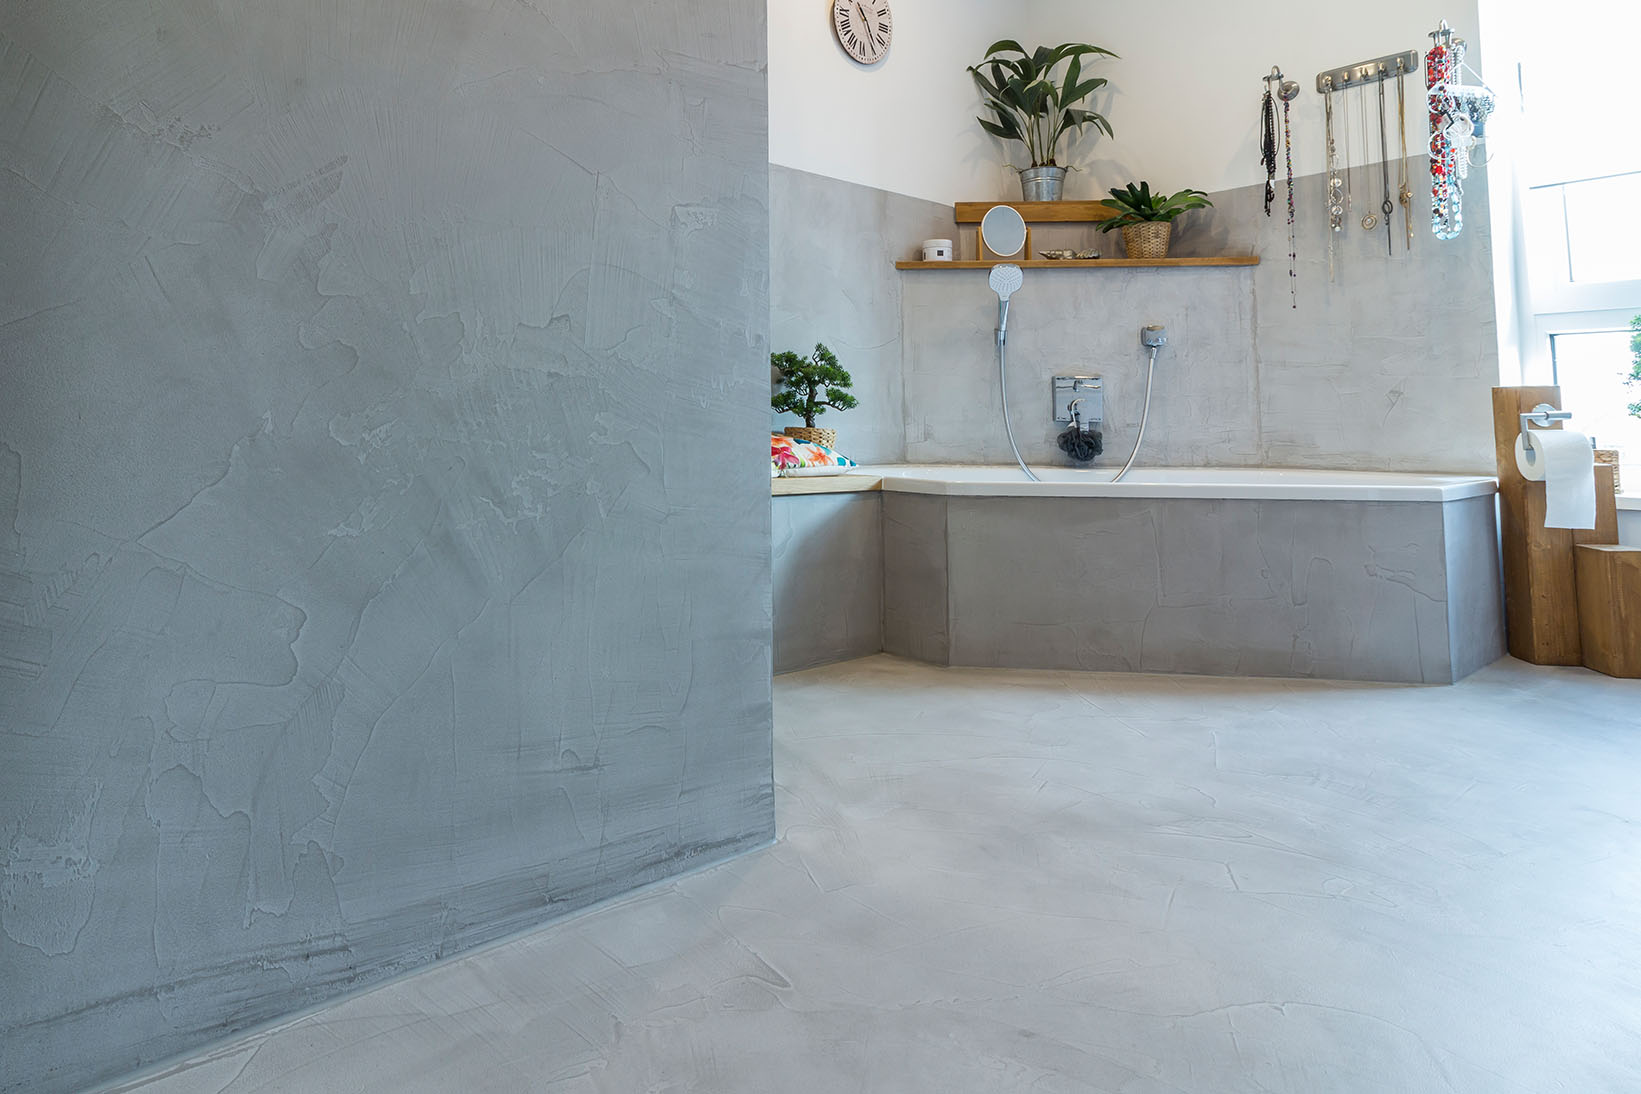 Betonboden gespachtelt fugenlos Wand grau Küche Bad Badezimmer Außenküche Grill Tisch Möbel mainTisch mainBeton mainGrill 3